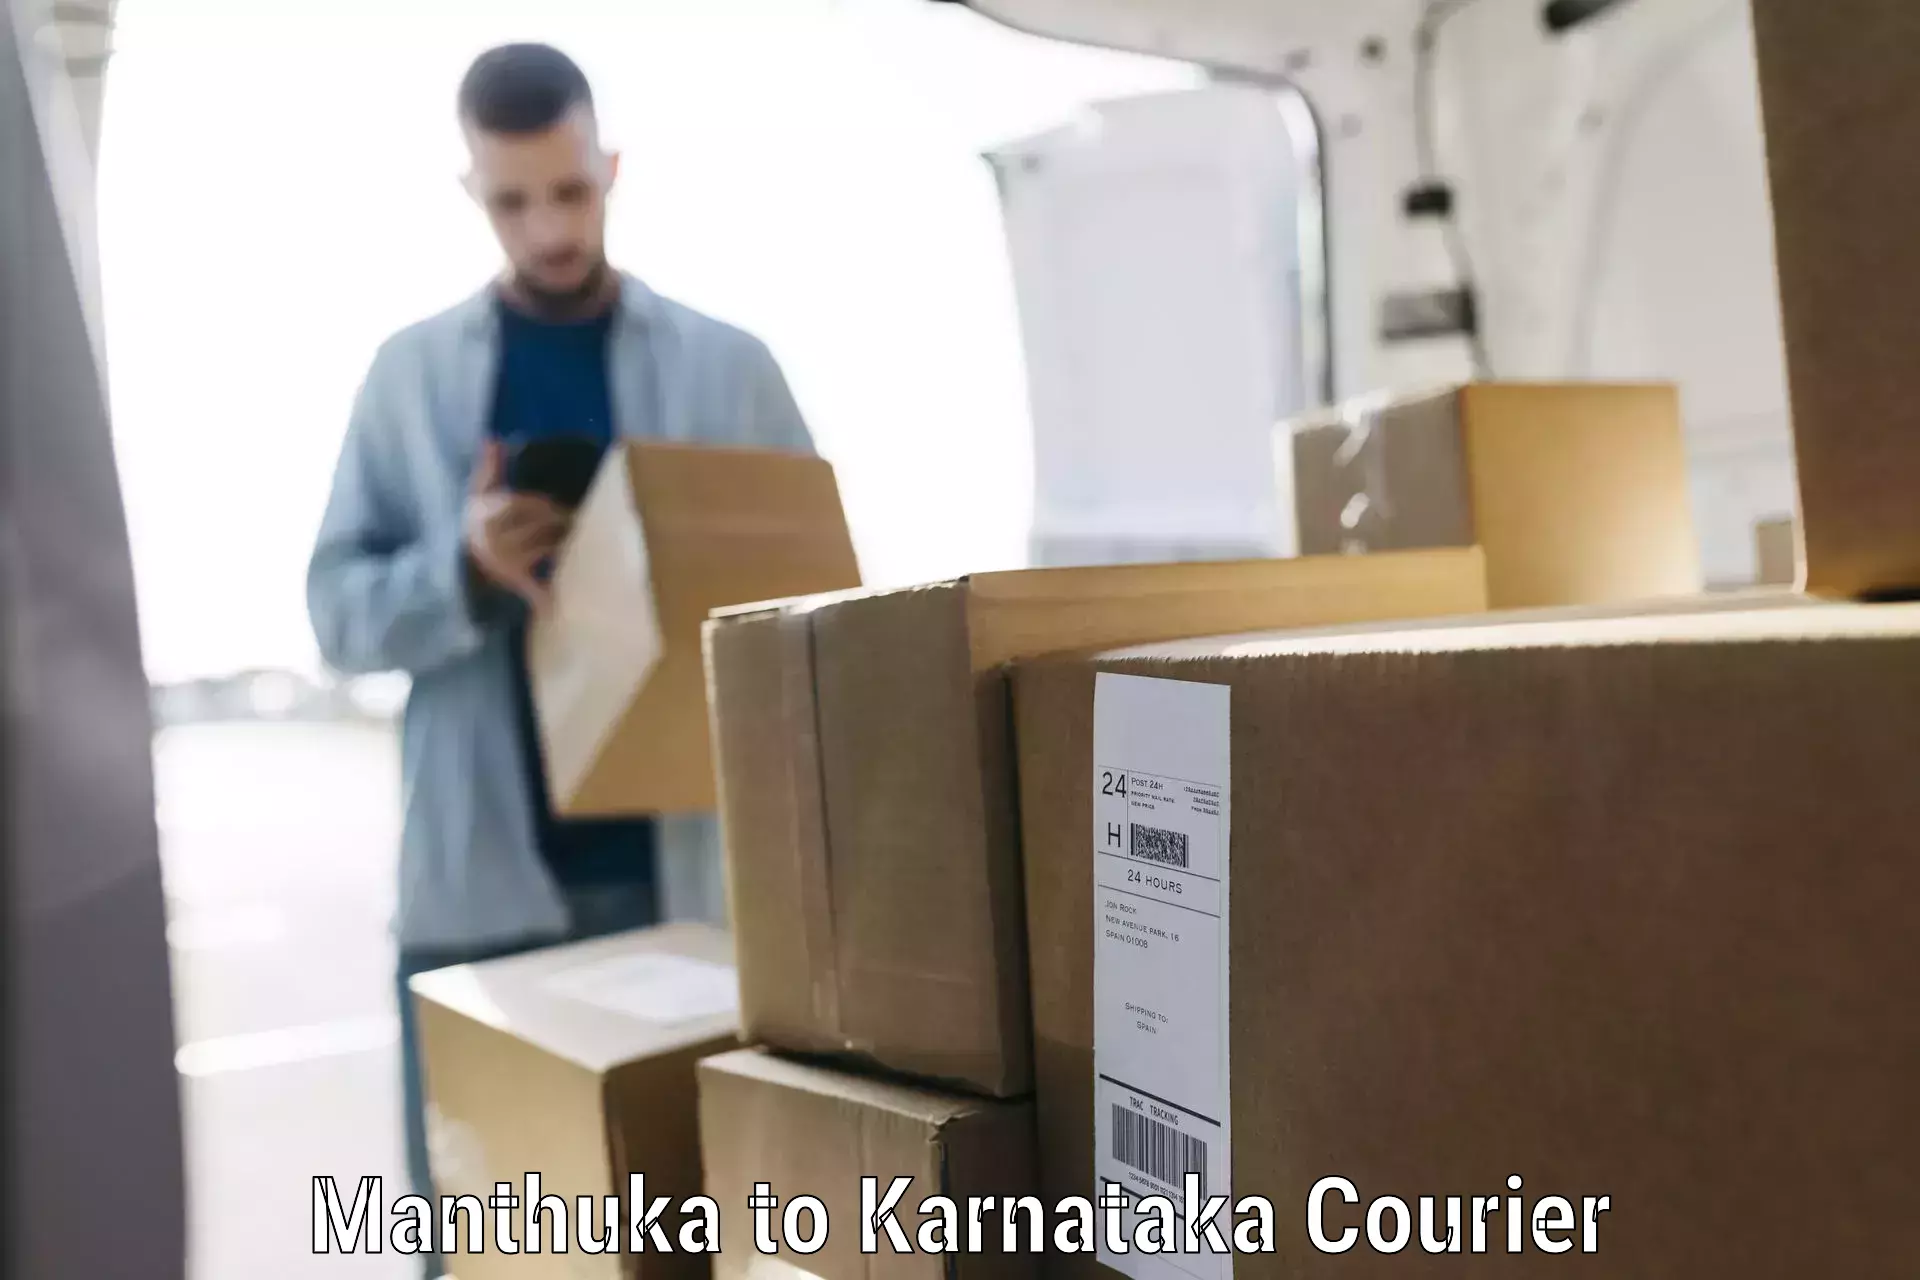 Baggage transport services Manthuka to Mandya